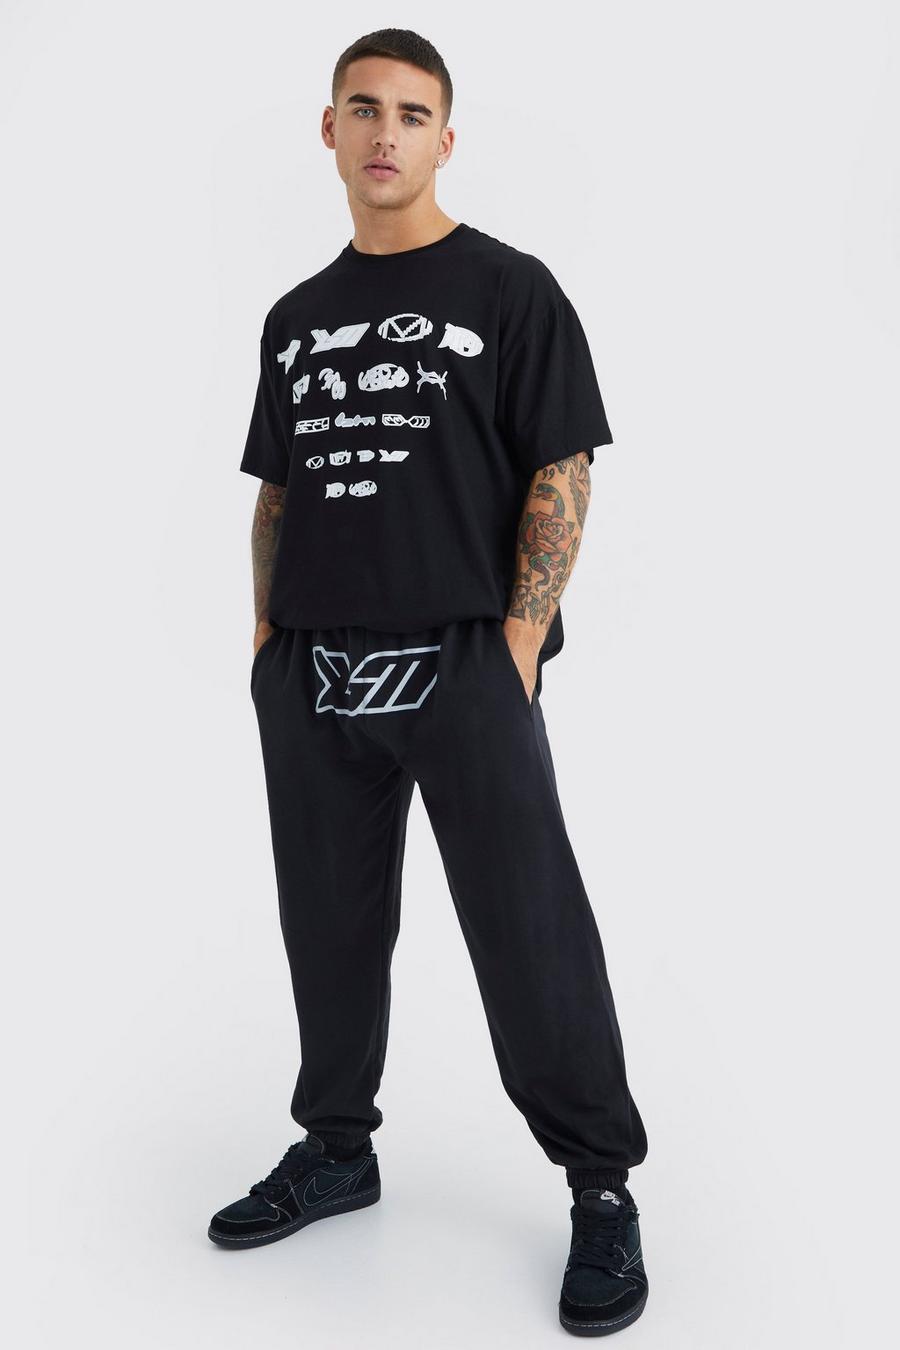 Conjunto oversize de pantalón deportivo y camiseta con estampado BM en la entrepierna, Black negro